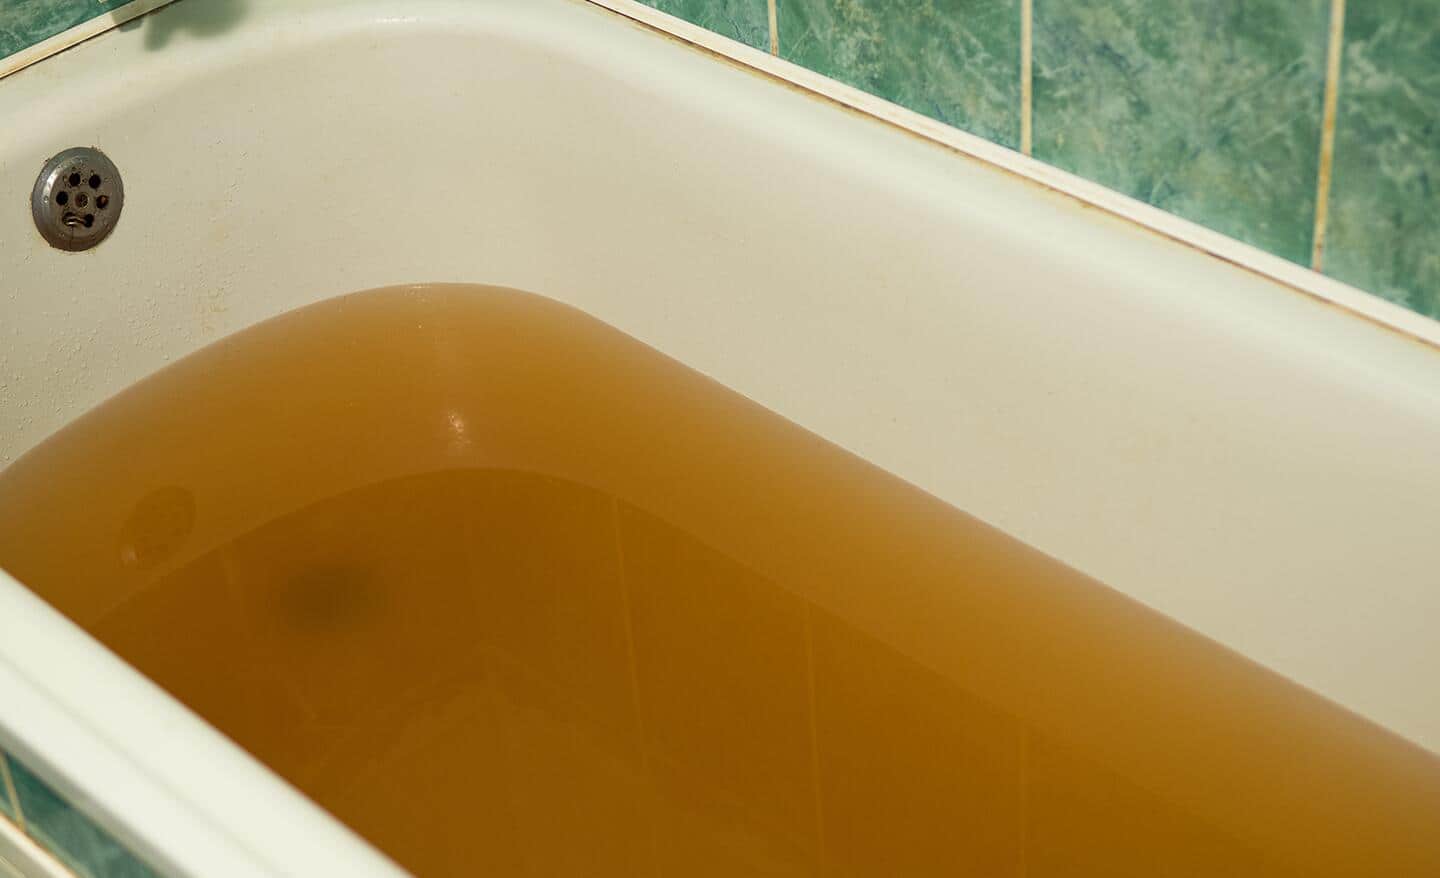 Sewage backing up into a bathtub.